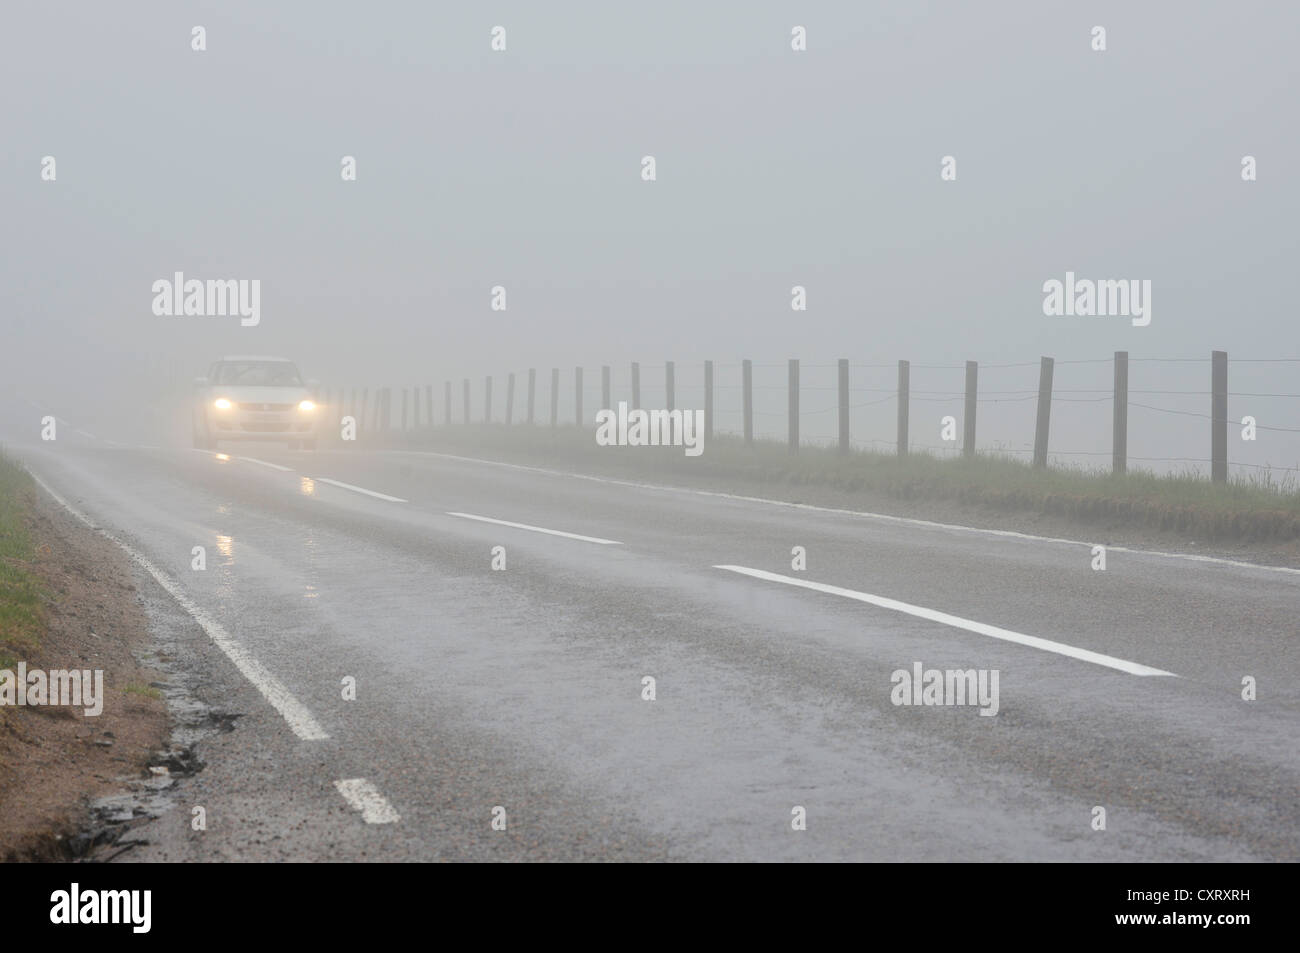 Automobile che viaggia con i fari accesi in caso di nebbia fitta su una strada nelle Highlands scozzesi, Grampian Mountains, Scotland, Regno Unito Foto Stock